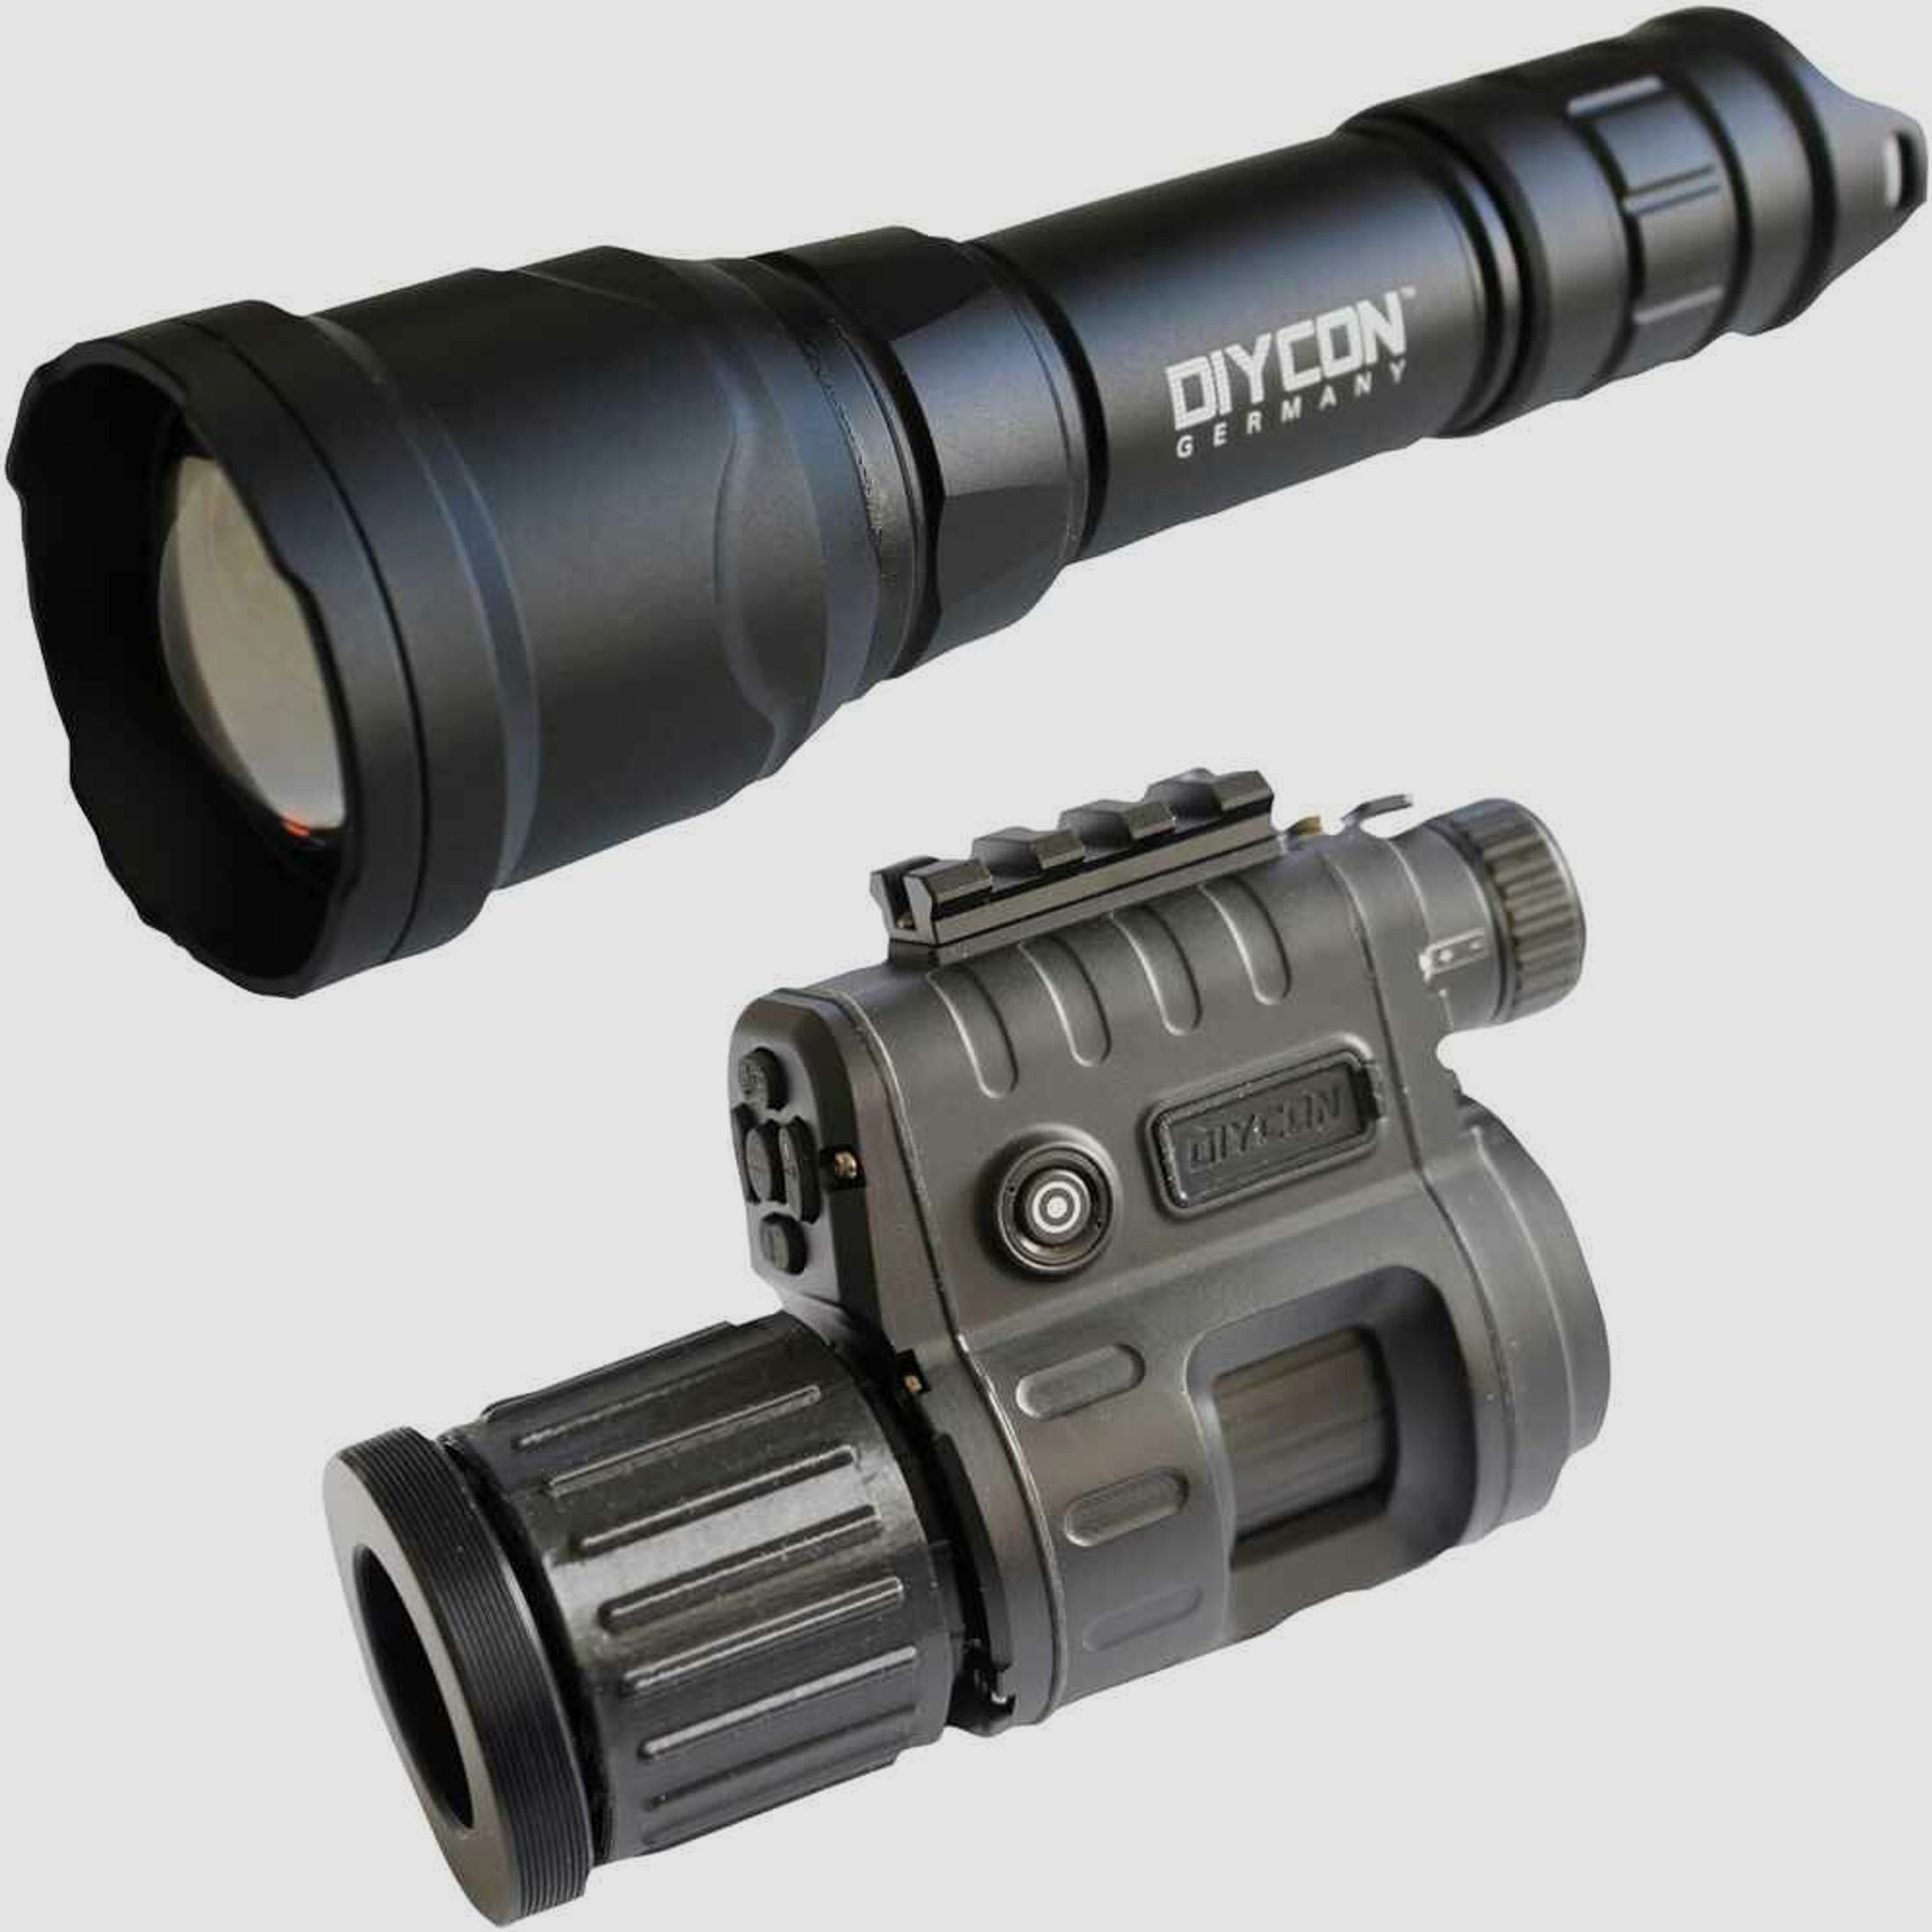 Dycon	 Dual-Use-Nachtsichtgerät DNVC-3 Black Mamba inkl. IR-LED Aufheller Predator 2